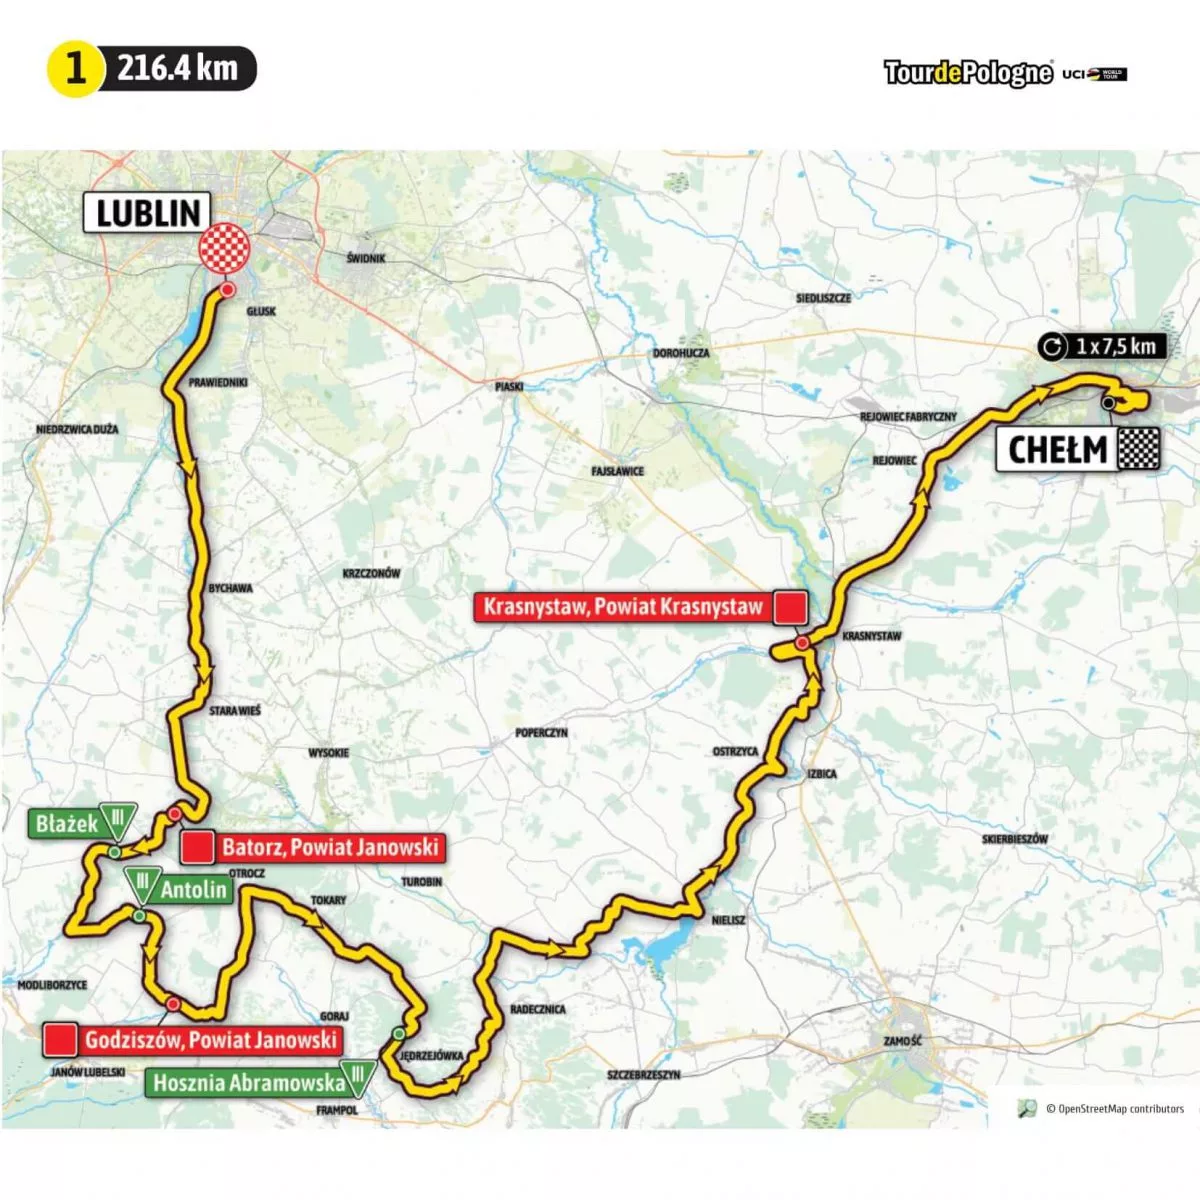 Tour de Pologne 2021 Stage 1 Map